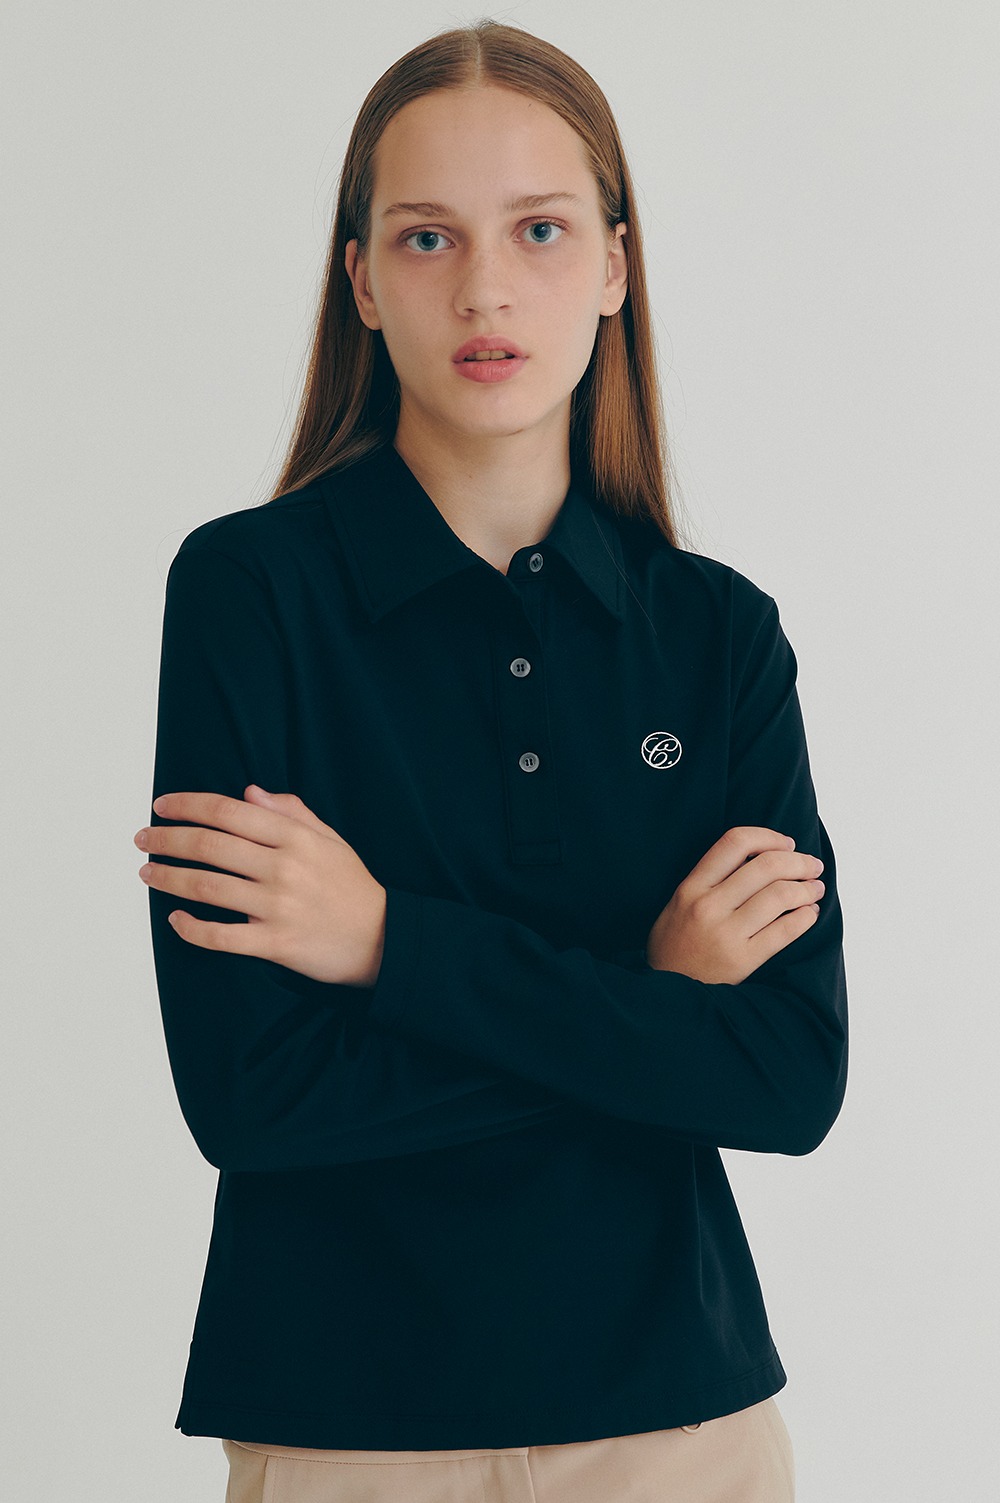 clove - [22FW clove] Long-Sleeve Polo Shirt (Black)